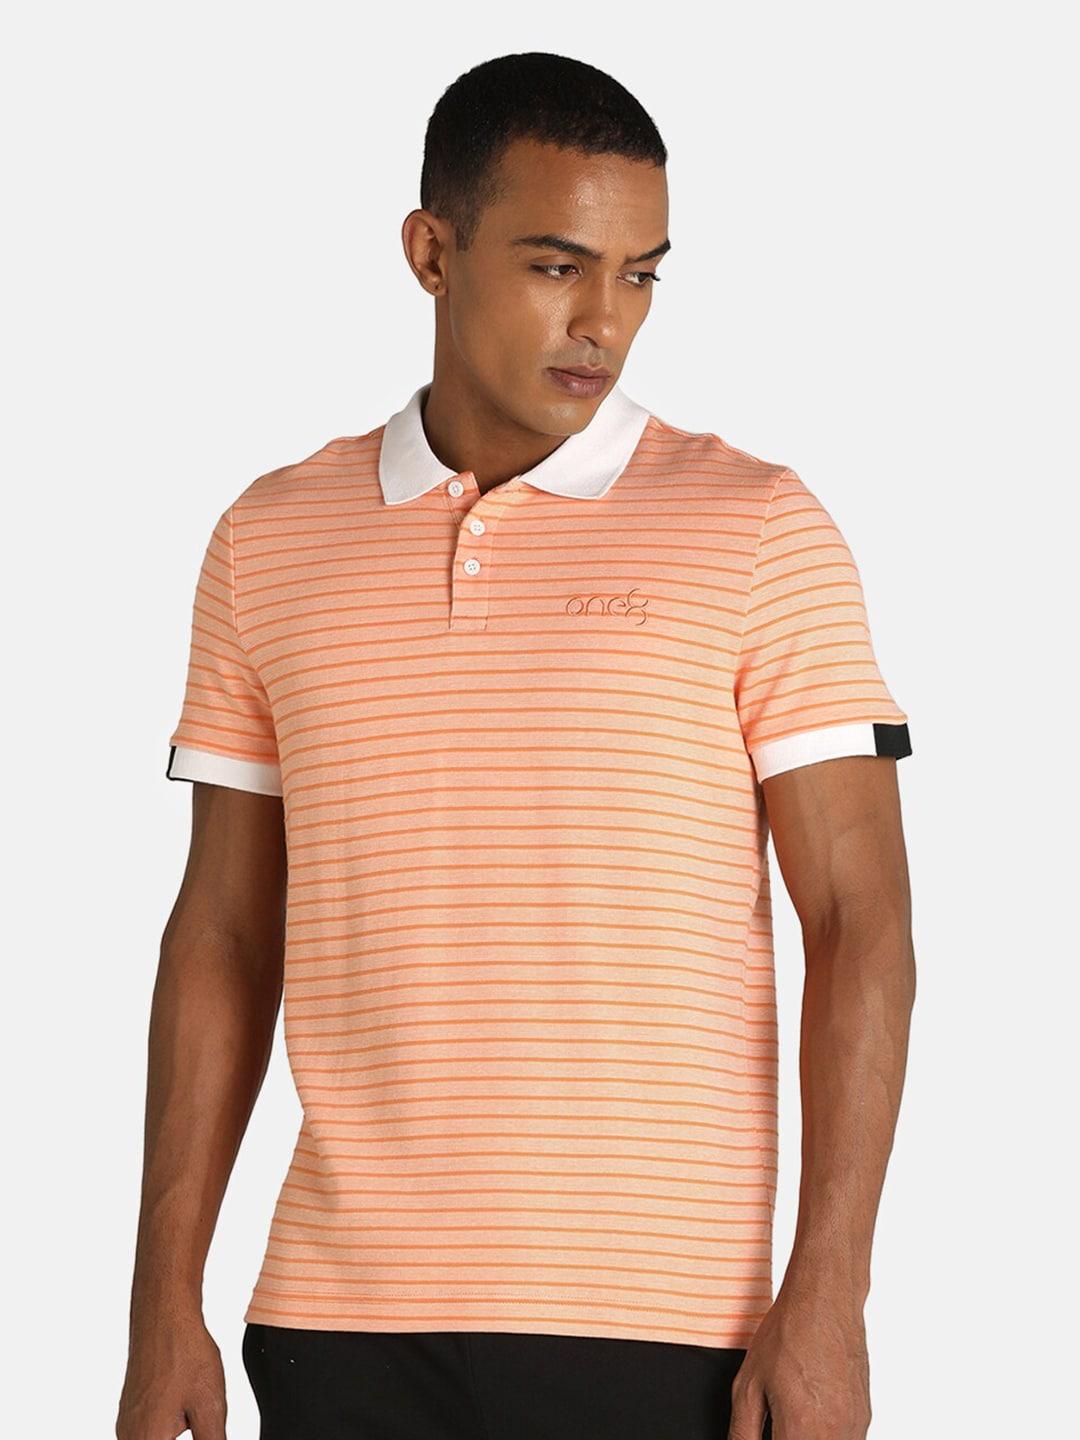 puma men orange striped polo collar slim fit one8 virat kohli jacquard t-shirt